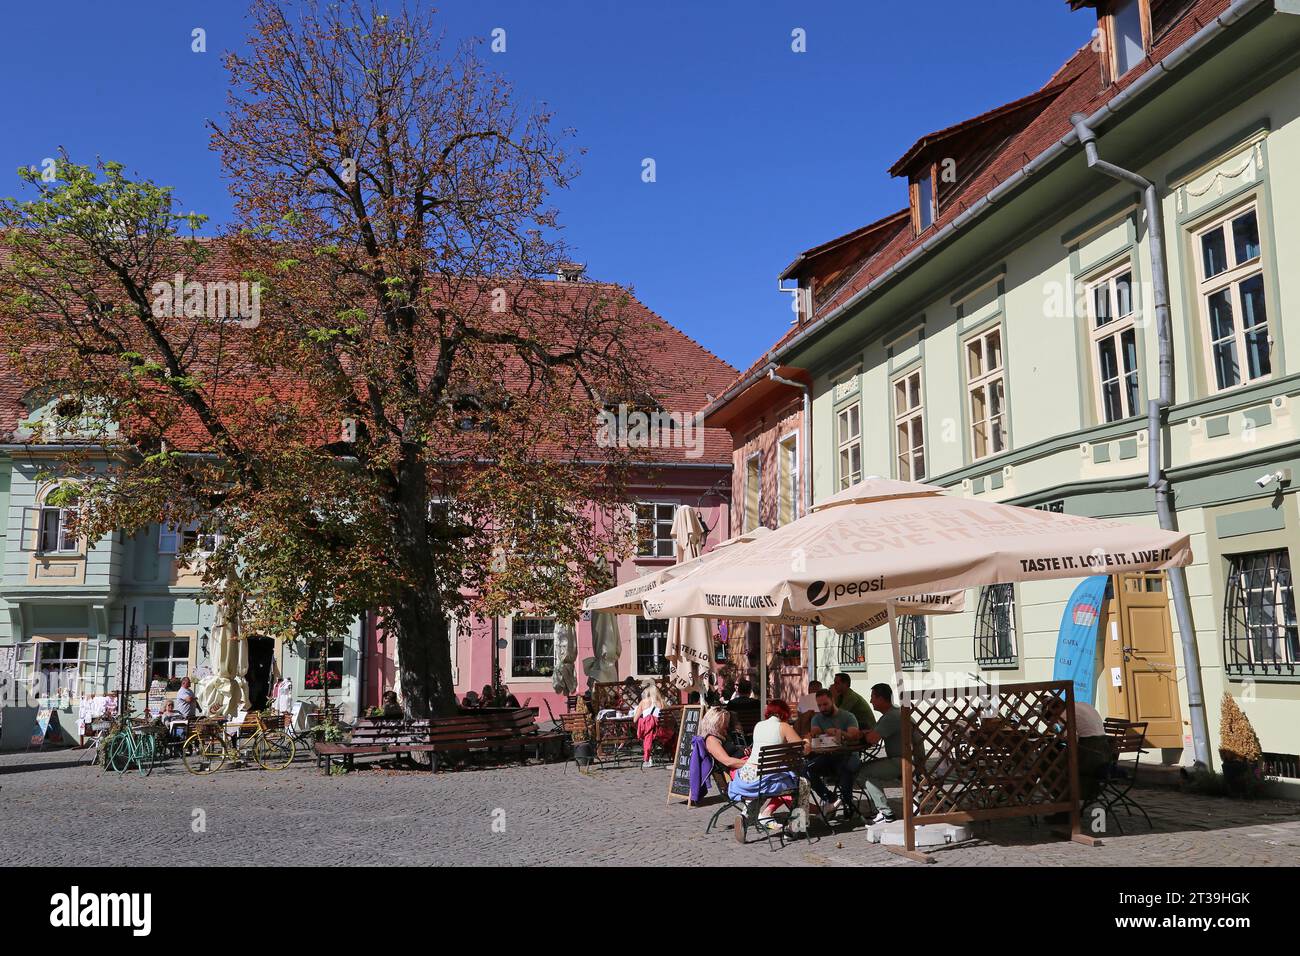 Piața Cetății (Citadel Square), Sighişoara, UNESCO World Heritage Site, Mureş County, Transylvania, Romania, Europe Stock Photo